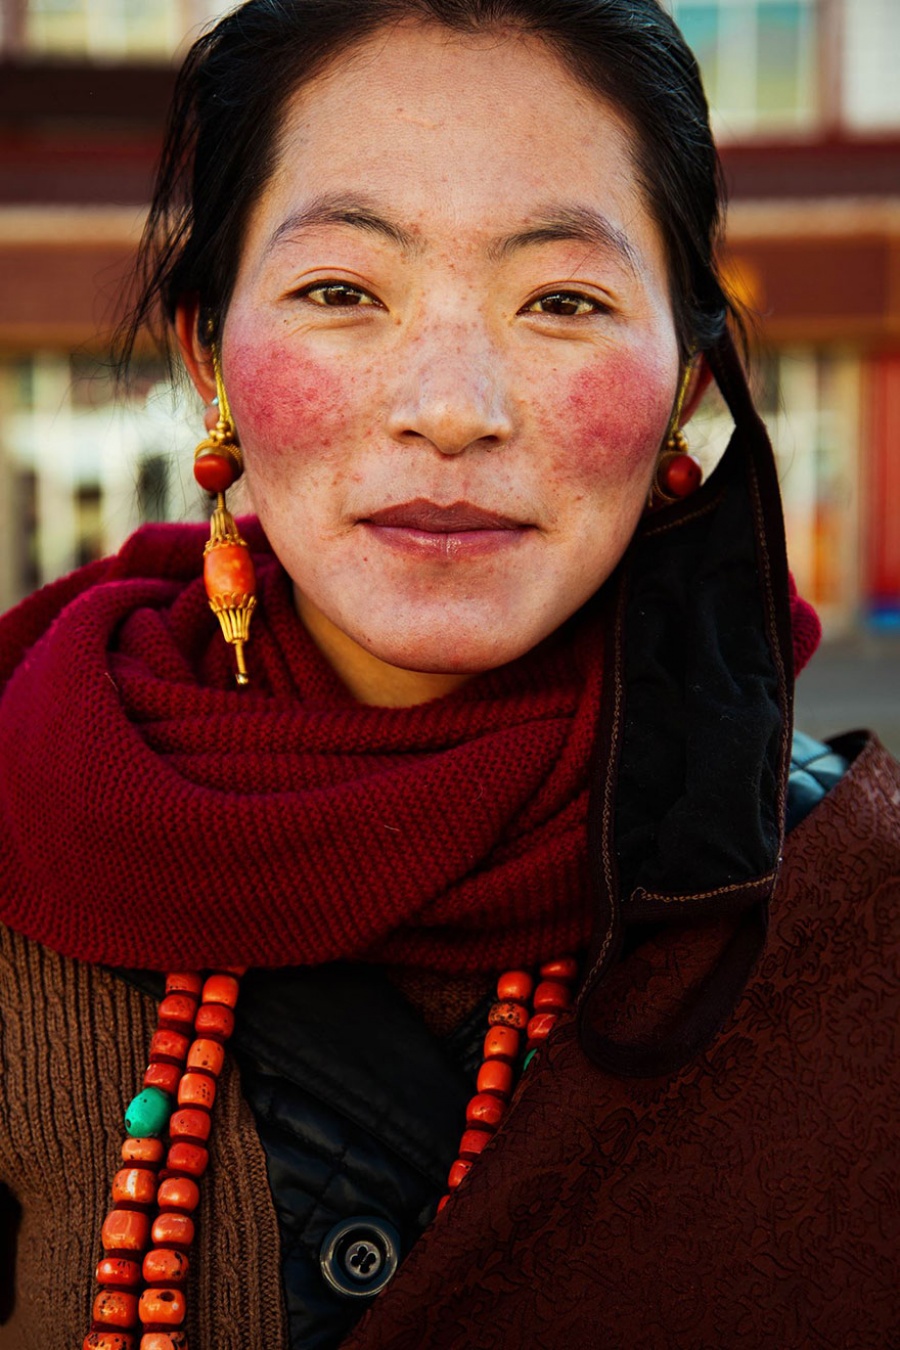 13376810-R3L8T8D-900-different-countries-women-portrait-photography-michaela-noroc-15-tibet-china-1